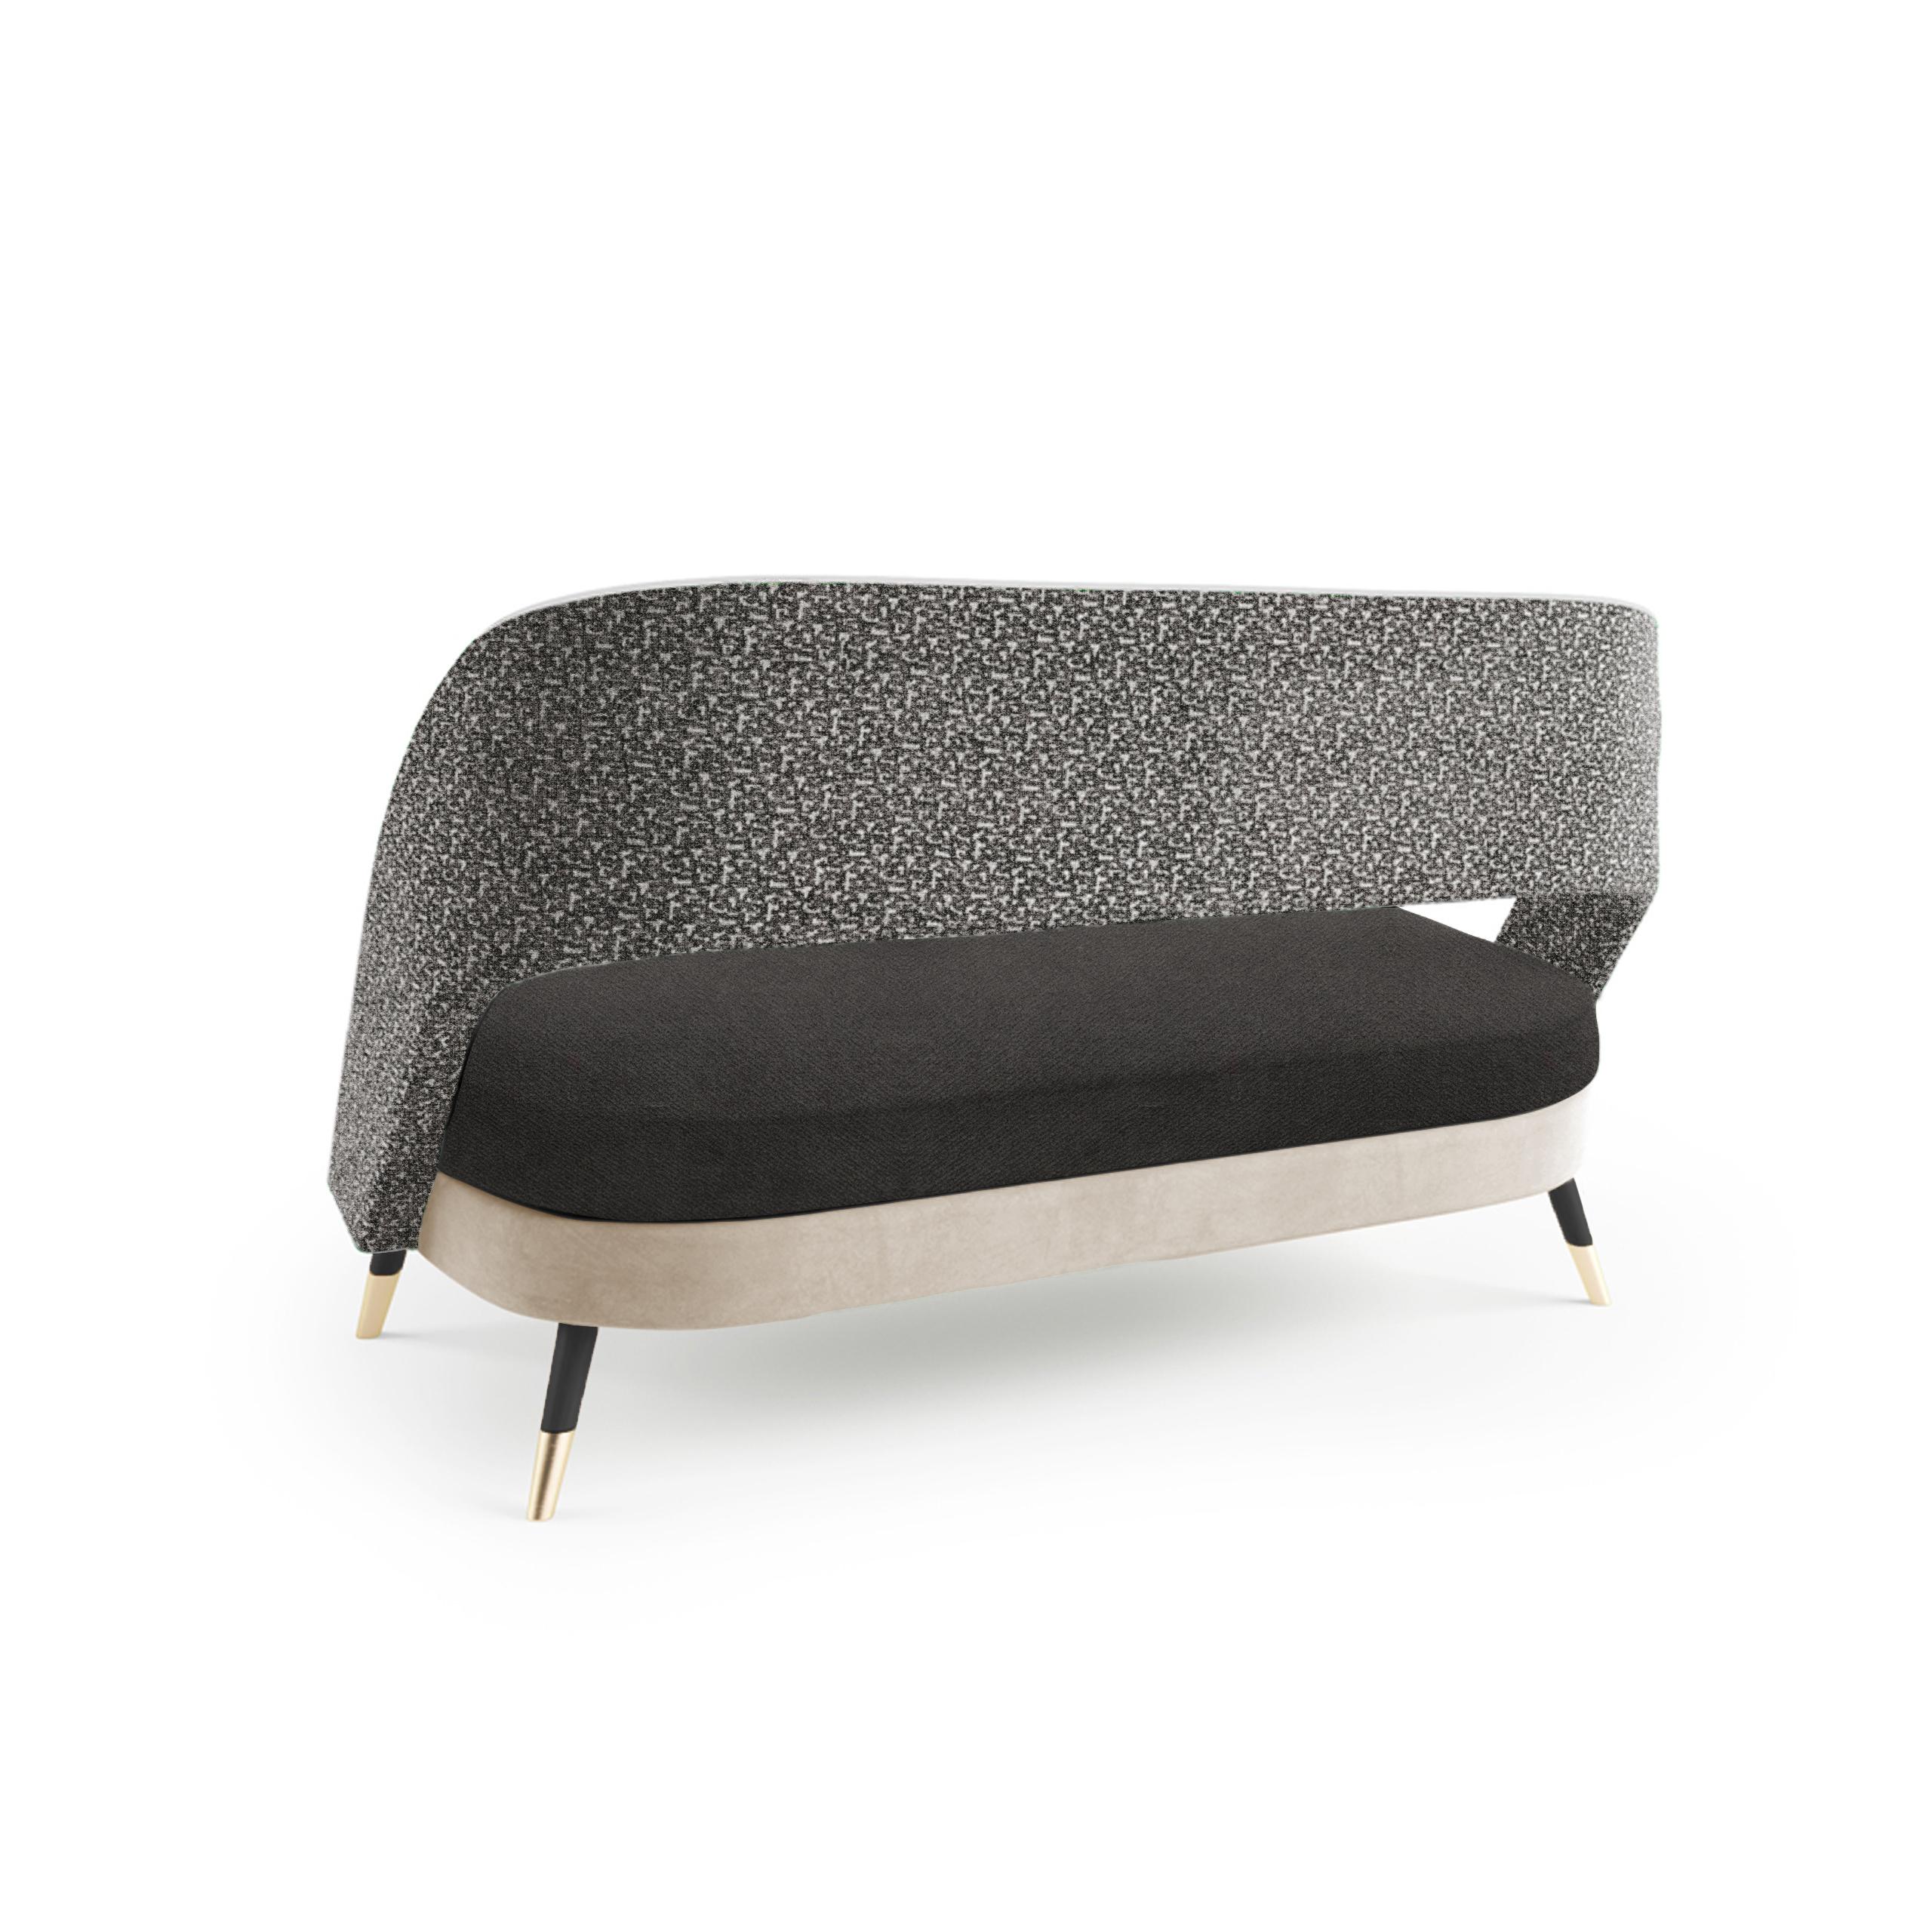 Das bequeme und elegante Sofa Ava ist ein vielseitiges Möbelstück, bei dem der Kreativität keine Grenzen gesetzt sind. Stoffe, Massivholz, Lacke und Messingbeschläge werden auf vielfältige Weise ausgewählt und kombiniert, um die perfekte Kombination